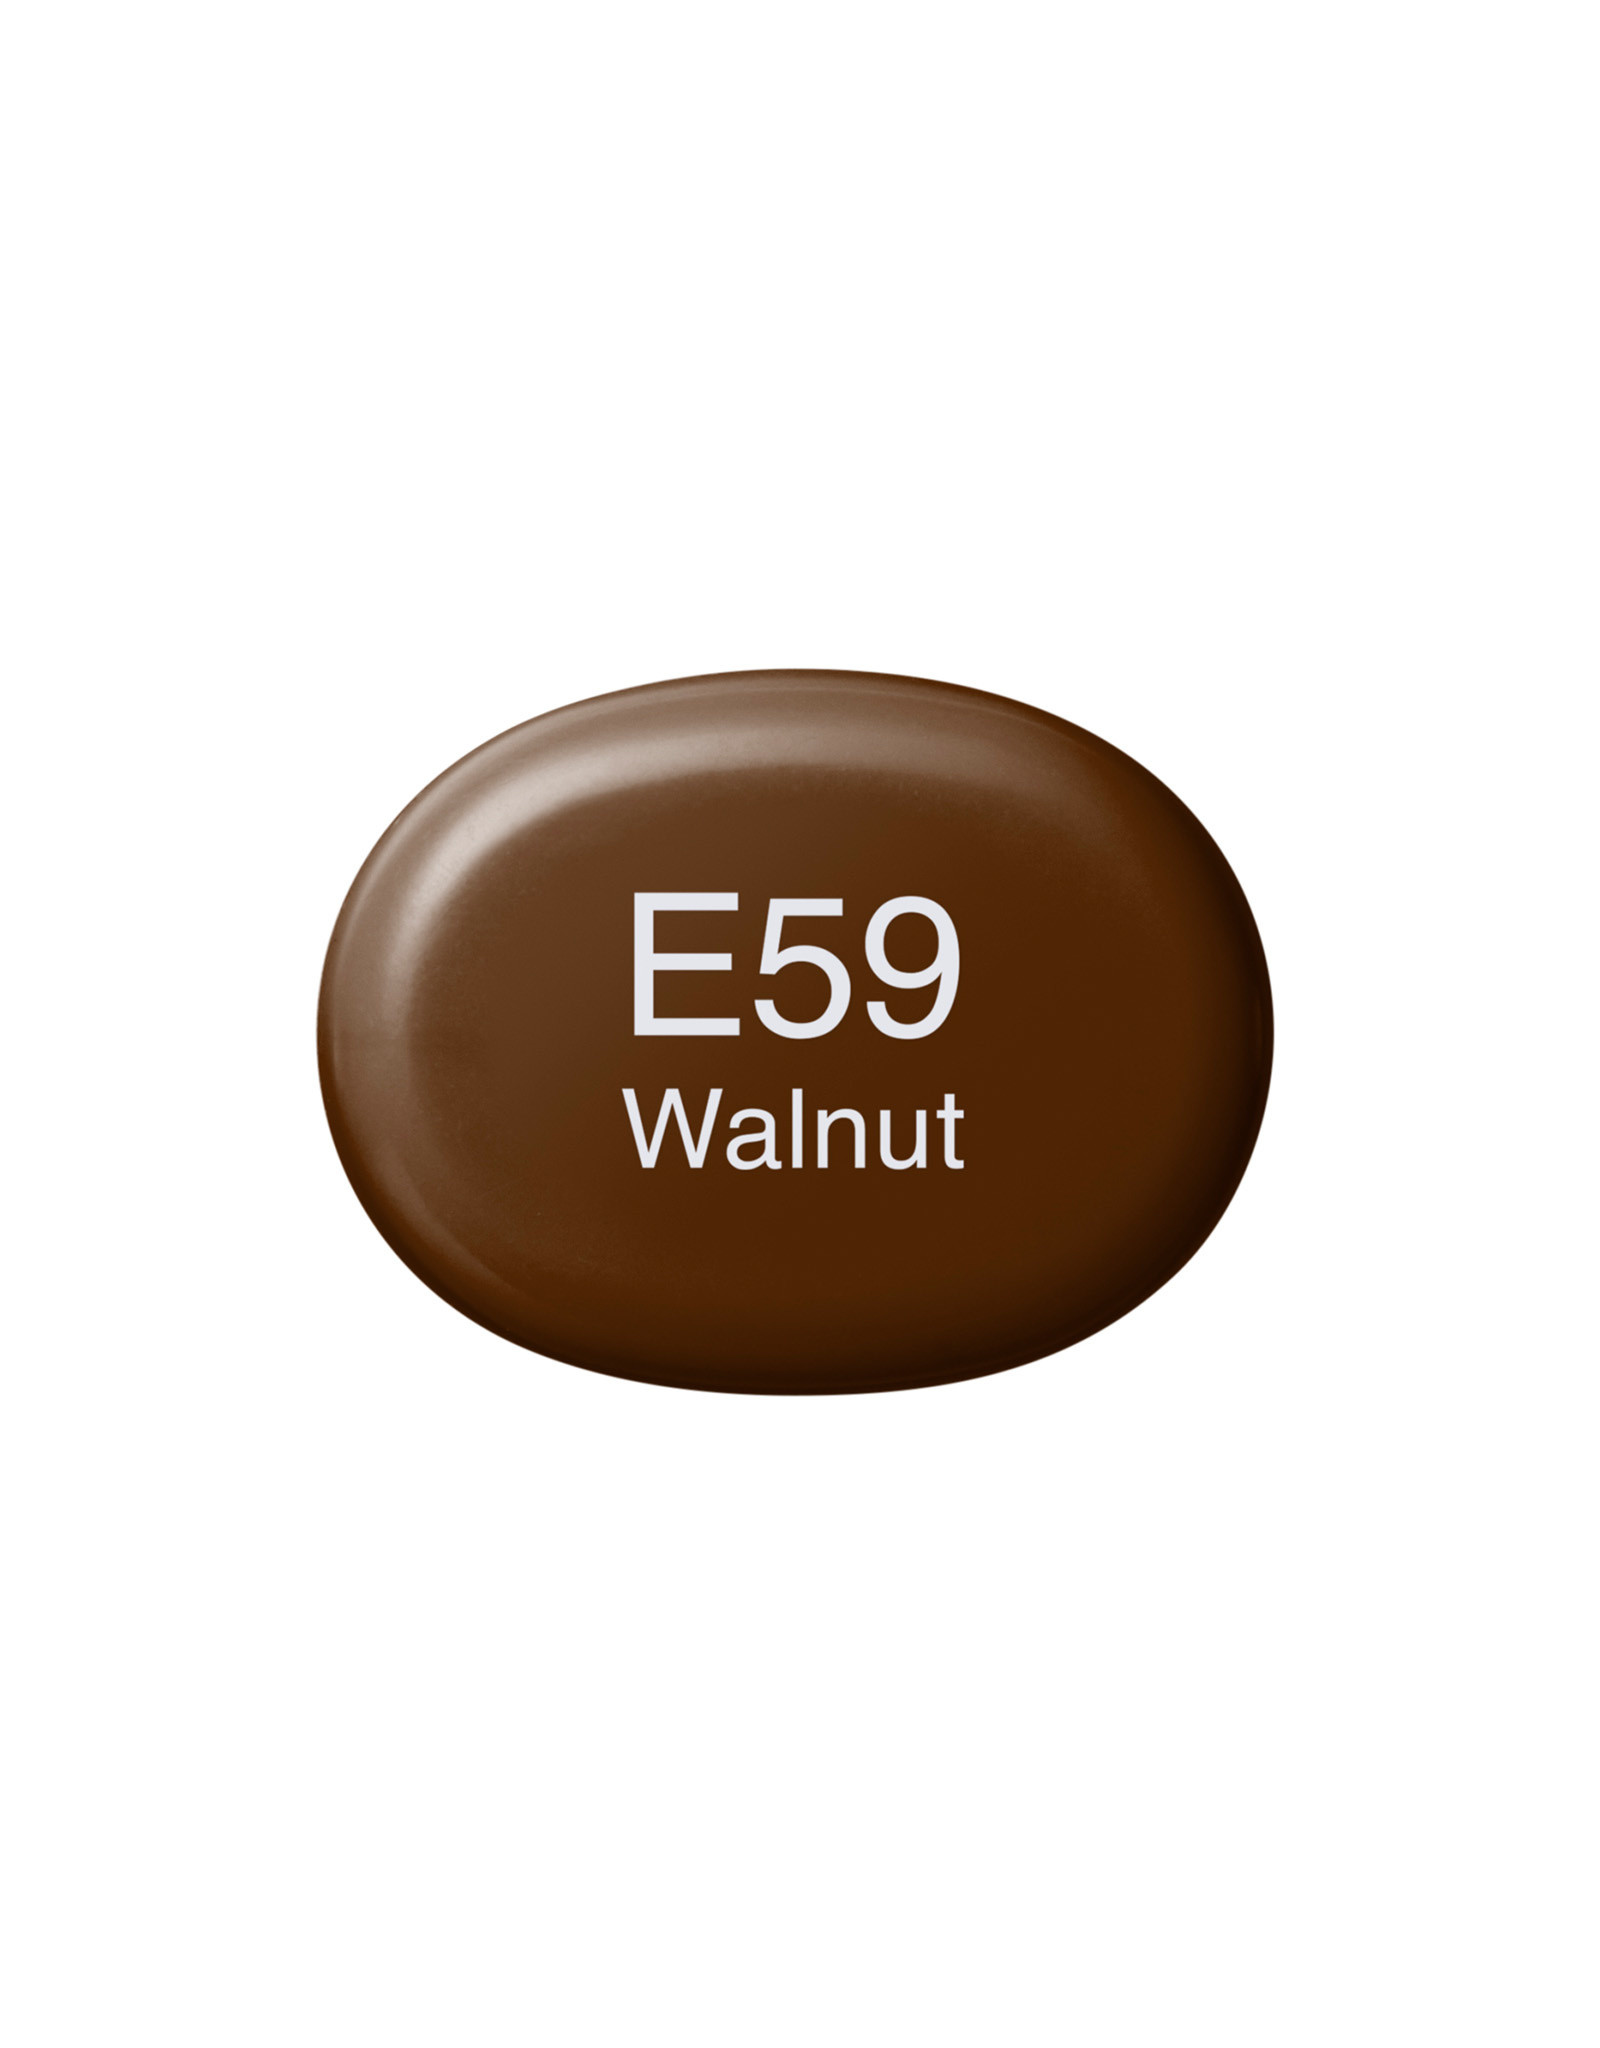 COPIC COPIC Sketch Marker E59 Walnut